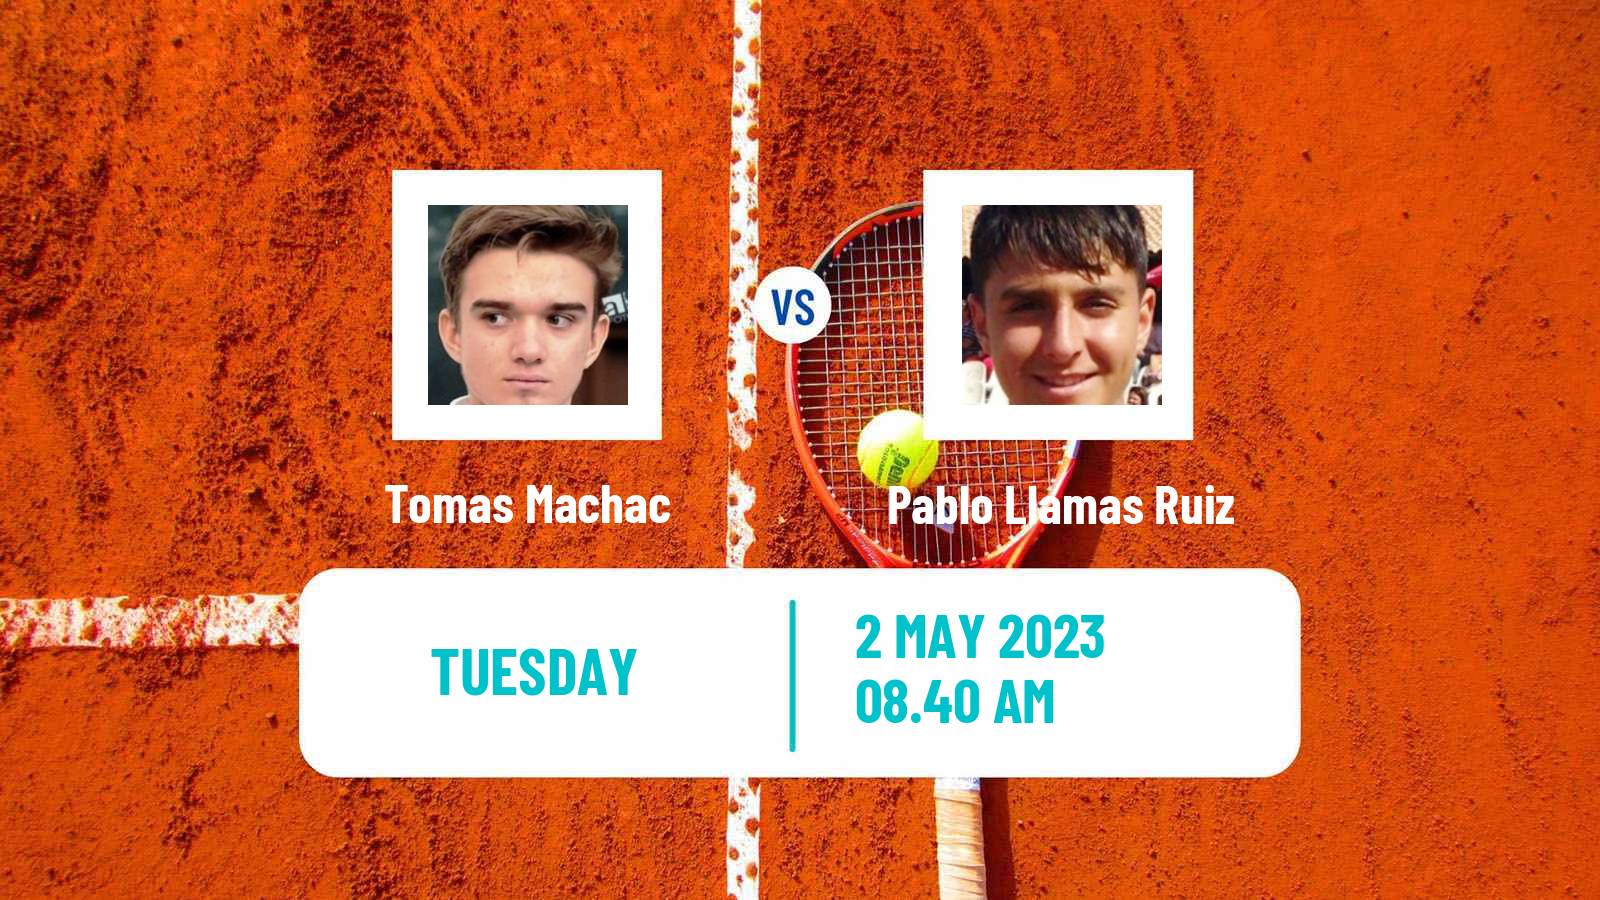 Tennis ATP Challenger Tomas Machac - Pablo Llamas Ruiz